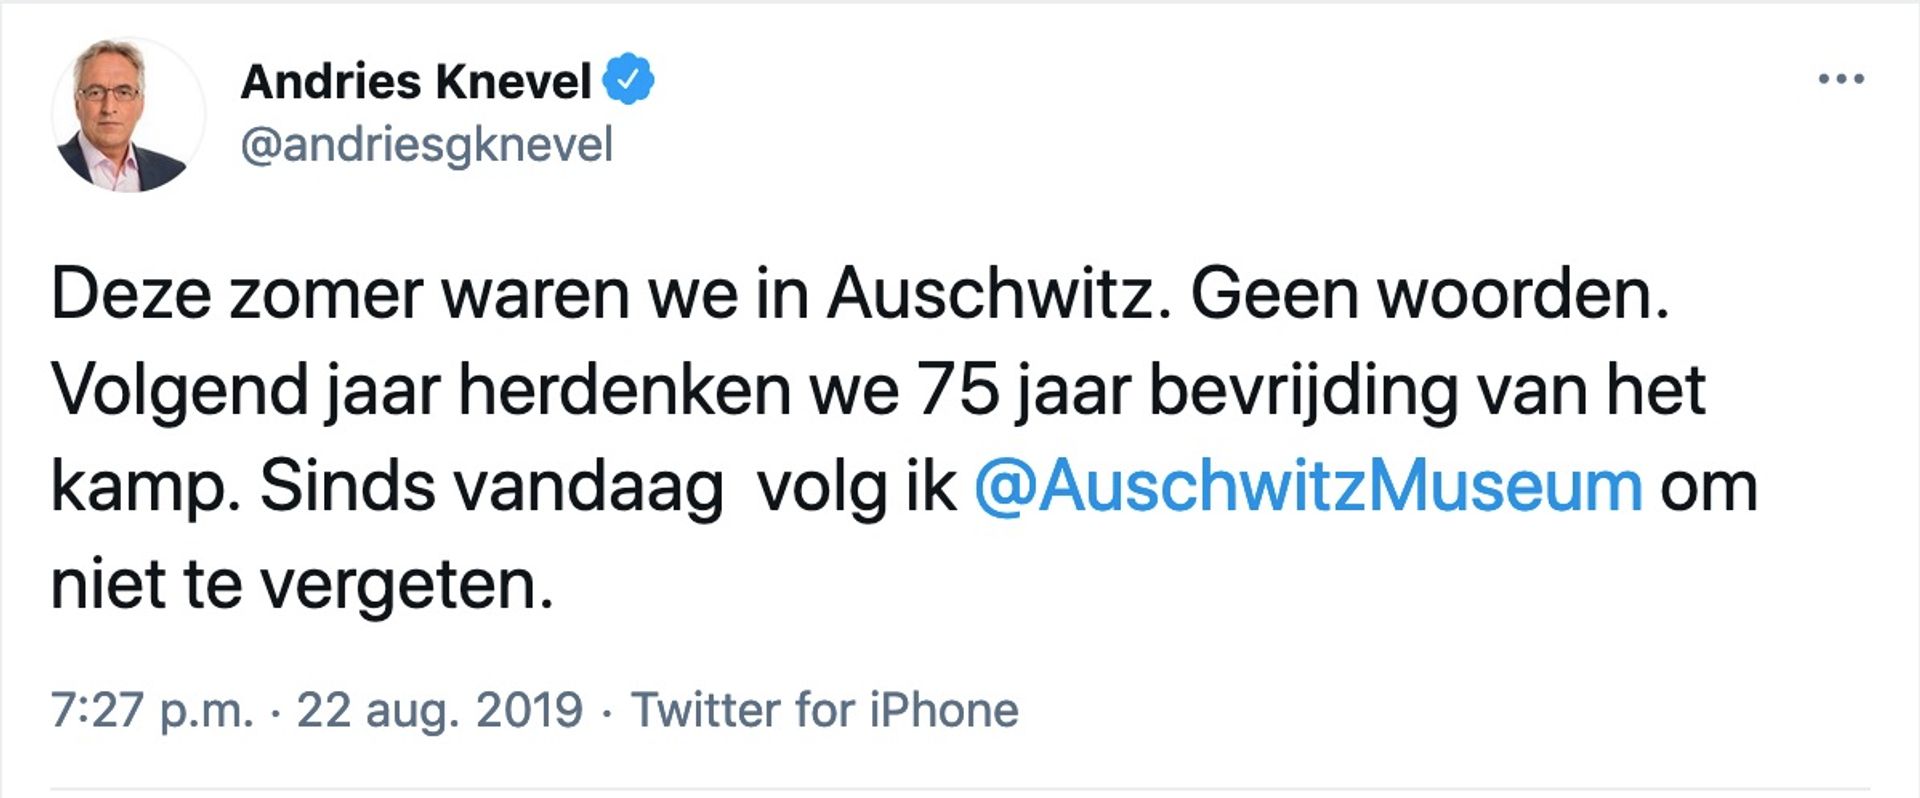 Tweet_Andries_Knevel_Auschwitz_2019